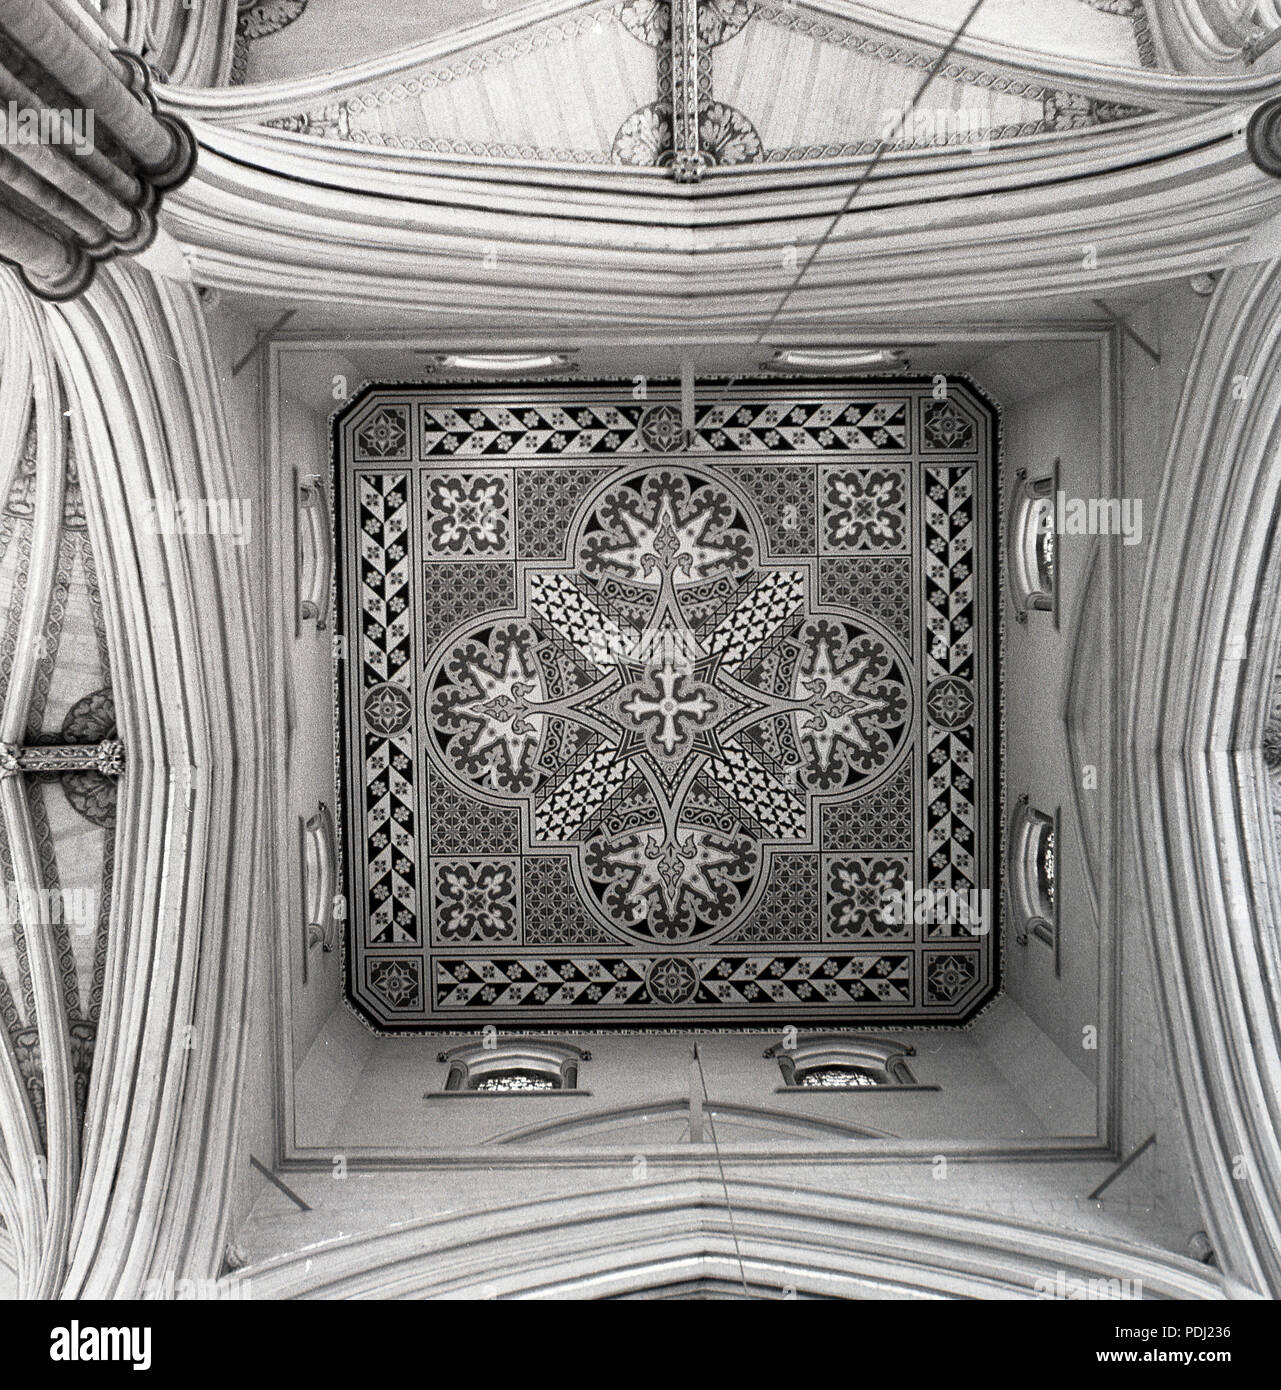 Anni sessanta, intricati murali modellato sul soffitto all'interno della Chiesa reale, l'Abbazia di Westminster, Londra, Inghilterra, Regno Unito, fondata dai monaci benedettini nel 960 d.c. Foto Stock